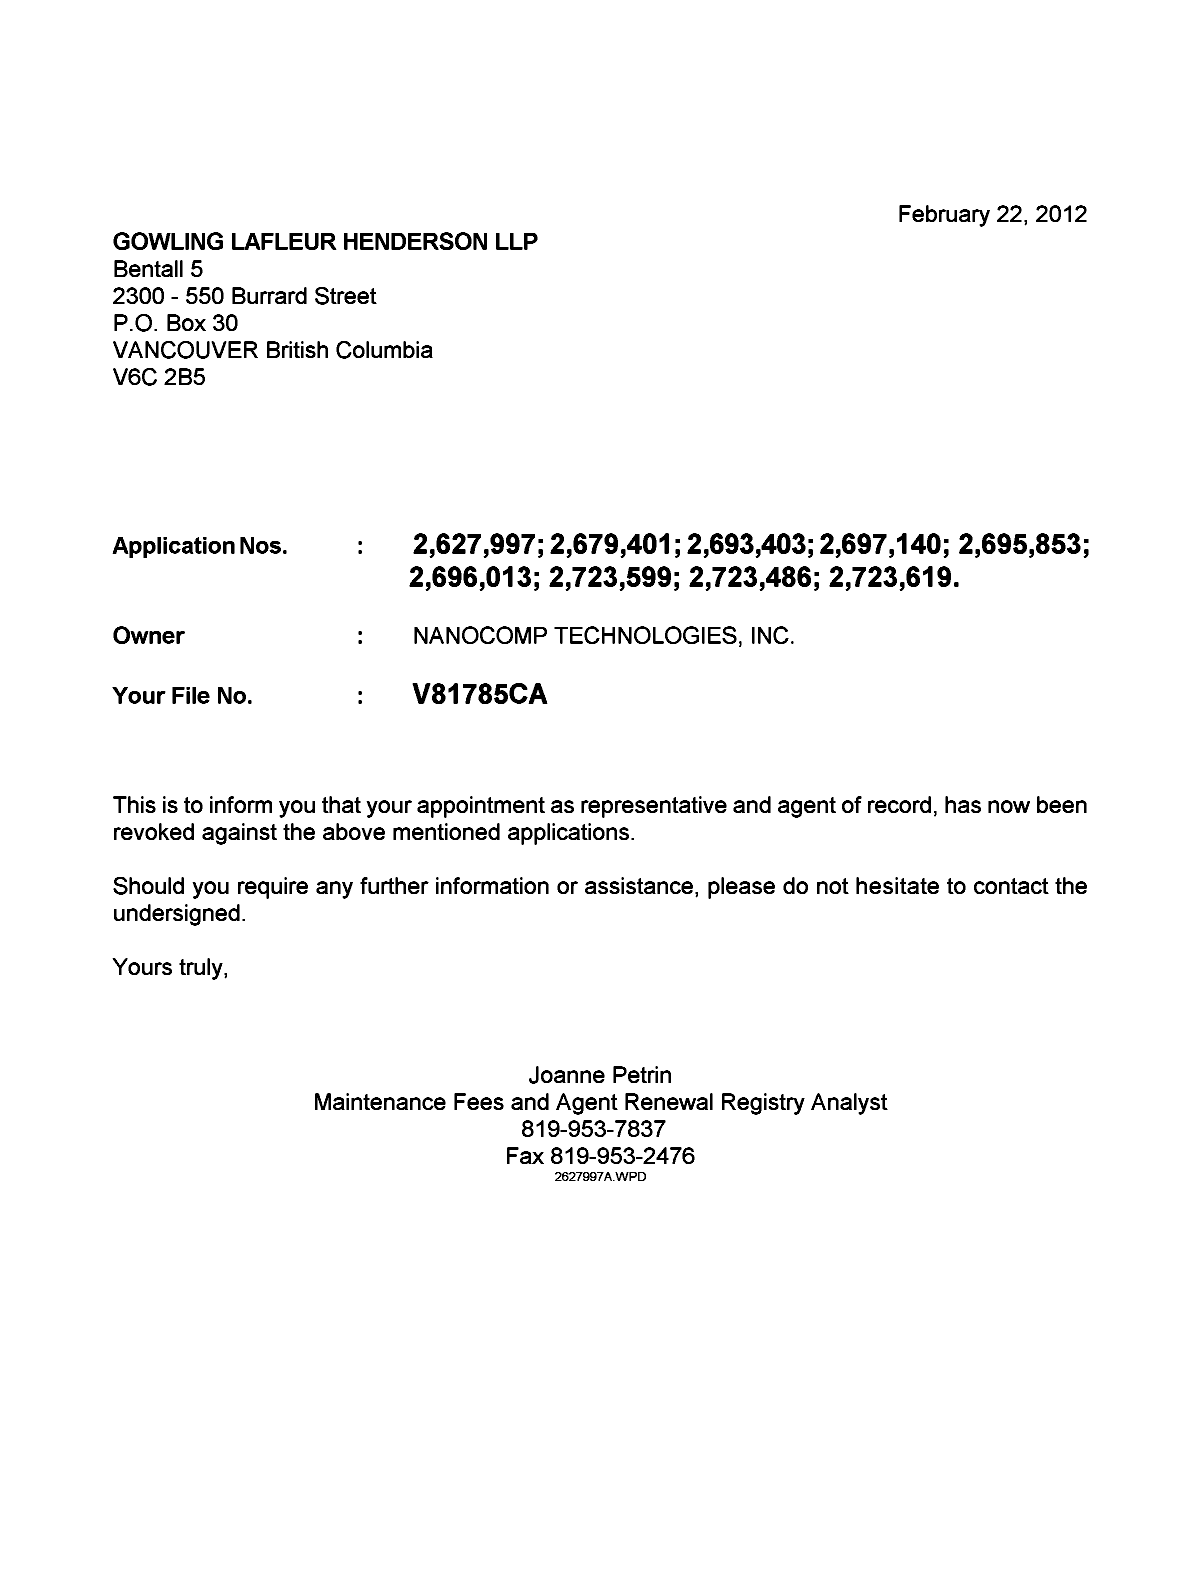 Document de brevet canadien 2723486. Correspondance 20120222. Image 1 de 1